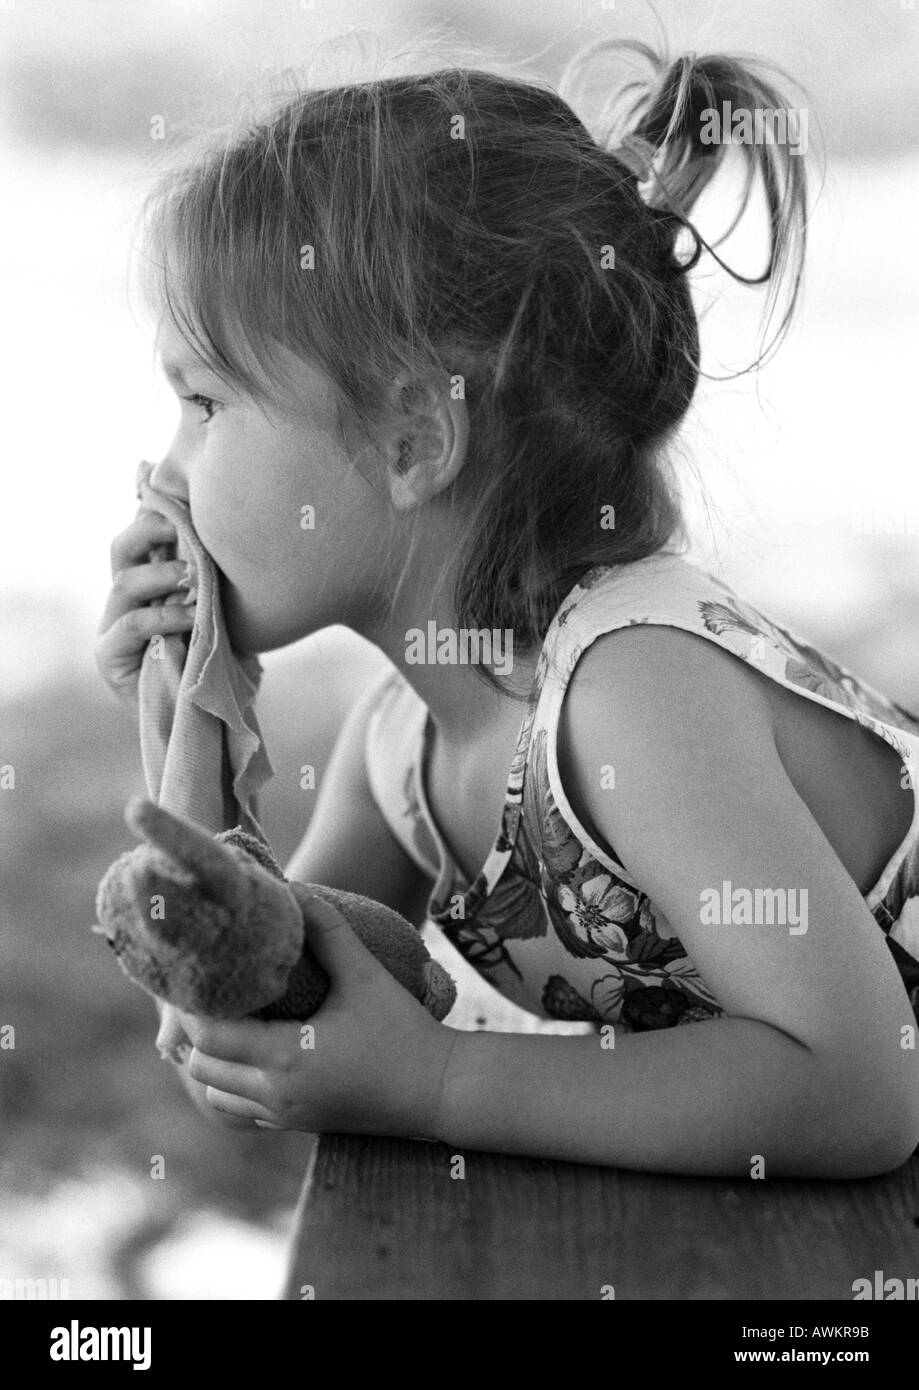 Girl holding animal en peluche dans la main et morceau de tissu sur la bouche, vue latérale, b&w Banque D'Images